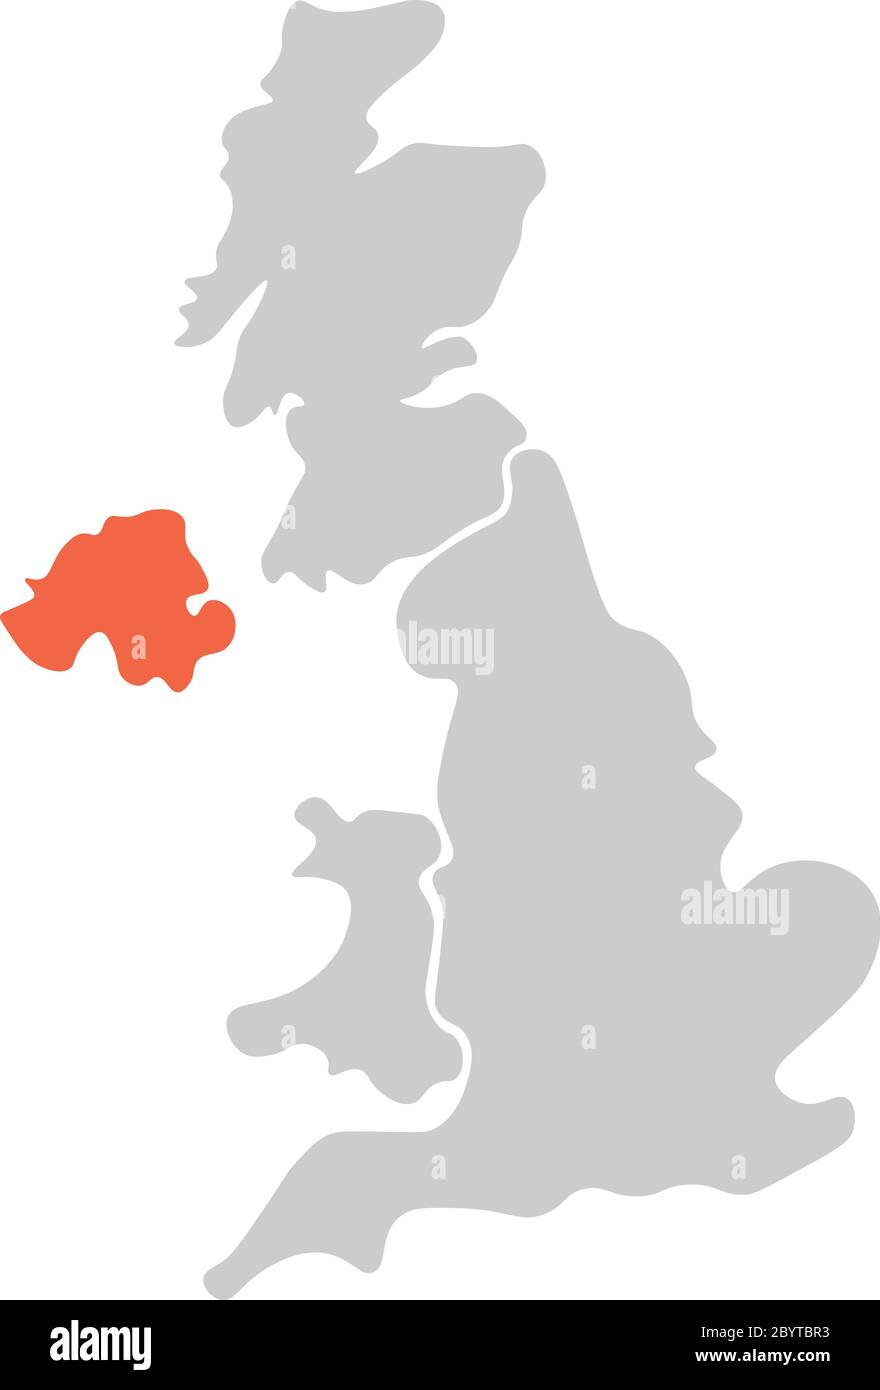 Mappa vuota semplificata disegnata a mano del Regno Unito di Gran Bretagna e Irlanda del Nord, Regno Unito. Diviso in quattro paesi con l'Irlanda del Nord evidenziata in rosso. Semplice illustrazione vettoriale piatta. Illustrazione Vettoriale